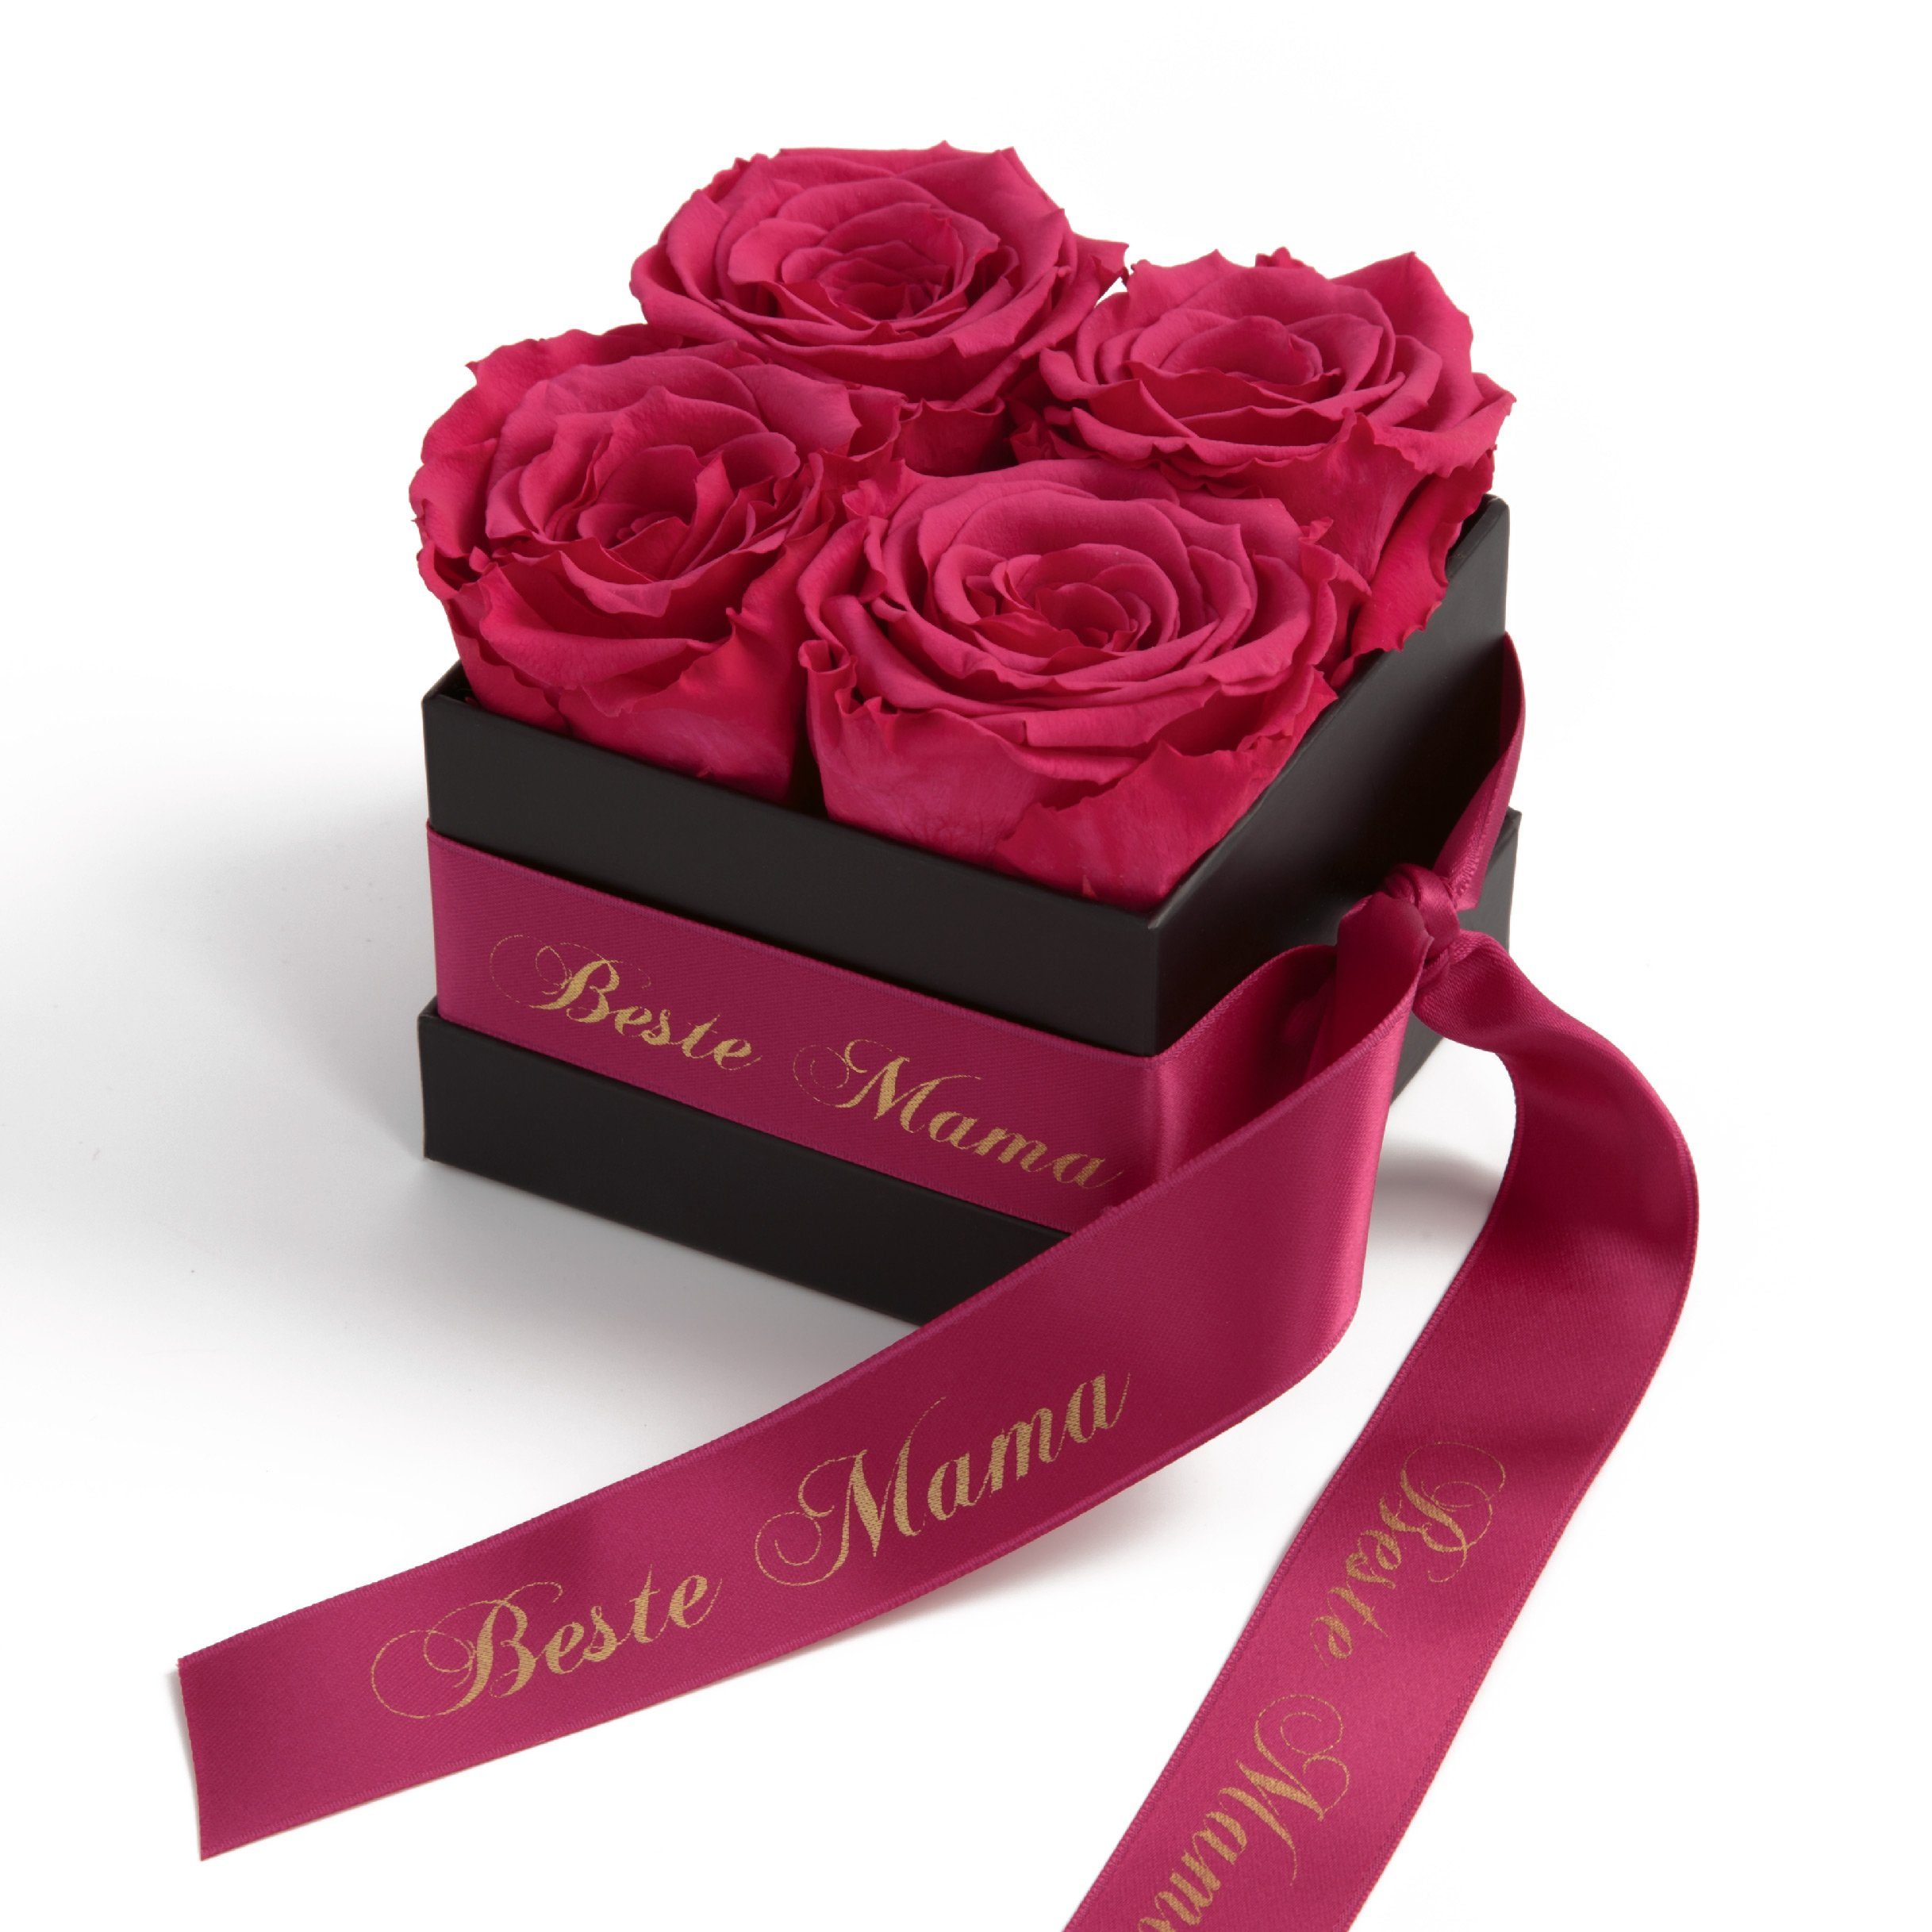 Kunstblume Beste Mama Infinity Rosenbox Rosen mit Duft echte konservierte Blumen Rose, ROSEMARIE SCHULZ Heidelberg, Höhe 8,5 cm, haltbar bis zu 3 Jahre Pink